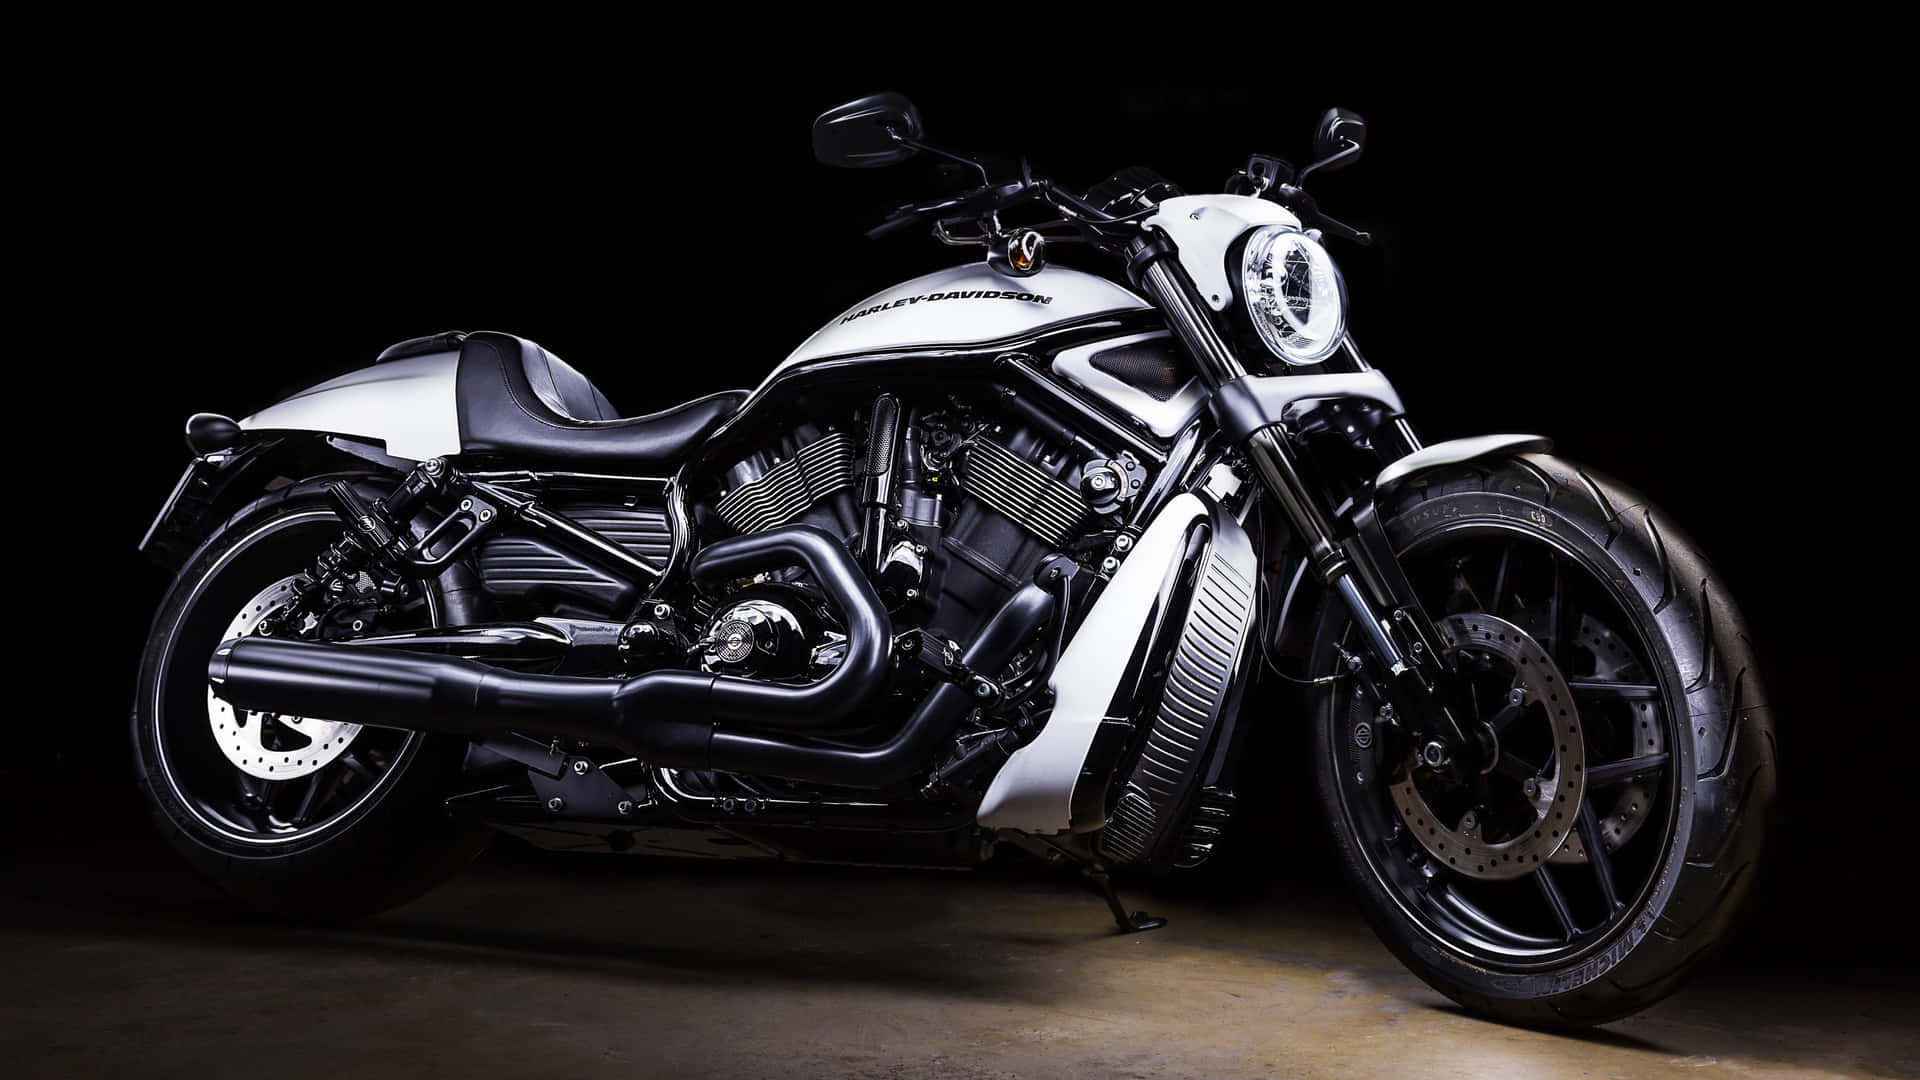 Harleydavidson Hintergrund Mit Silbernen Metallic-motorrad.